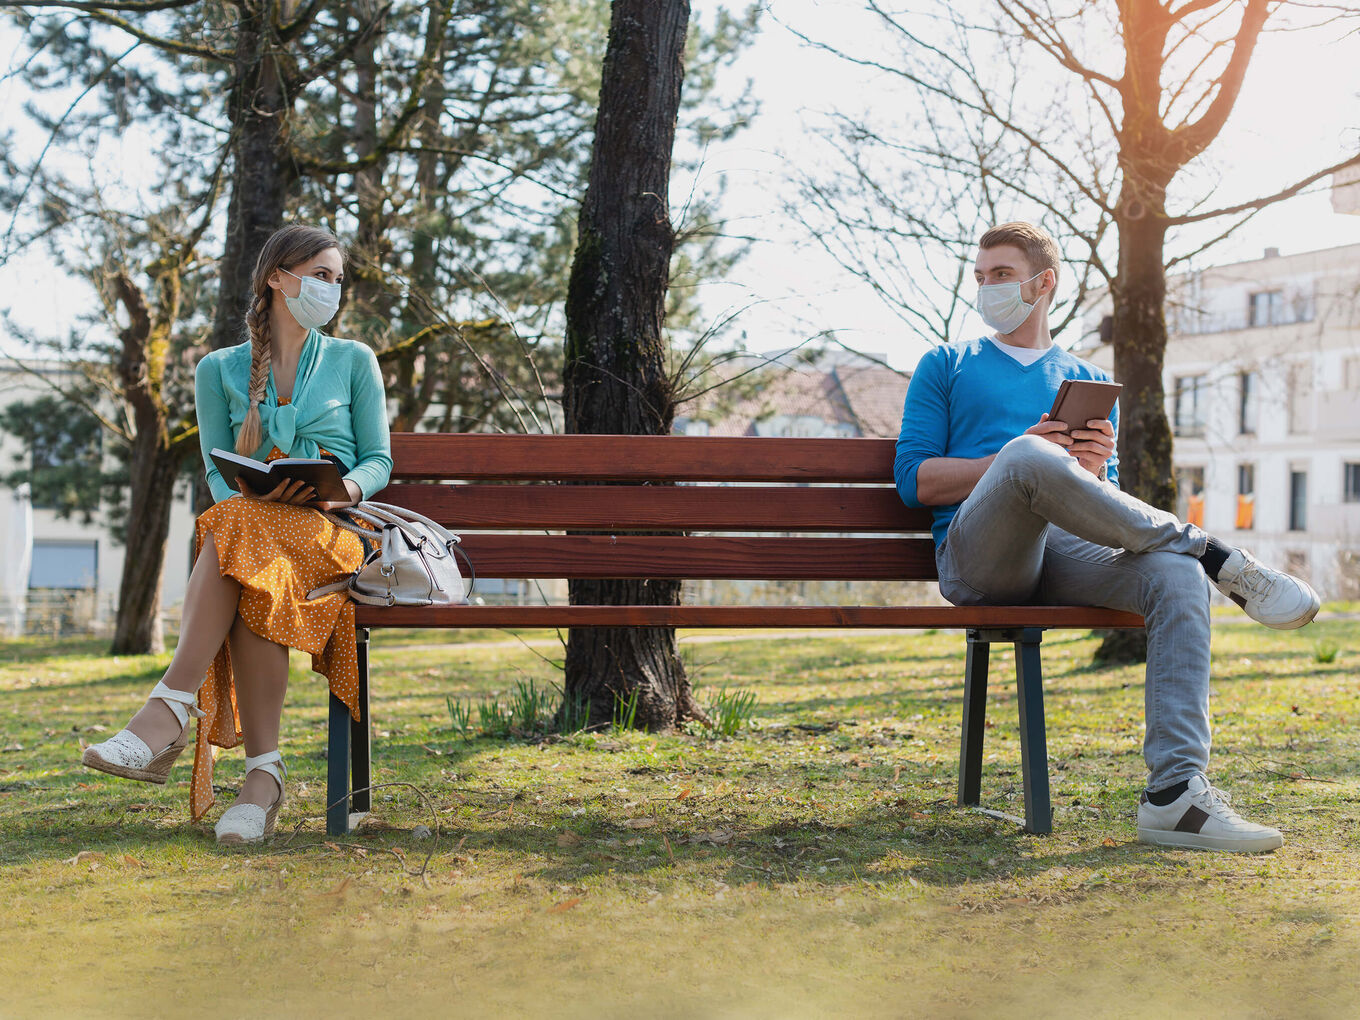 Junge Frau und junger Mann, jeweils mit OP-Maske, sitzen mit geöffneten Büchern in der Hand auf einer Bank im Park und schauen sich freundlich an